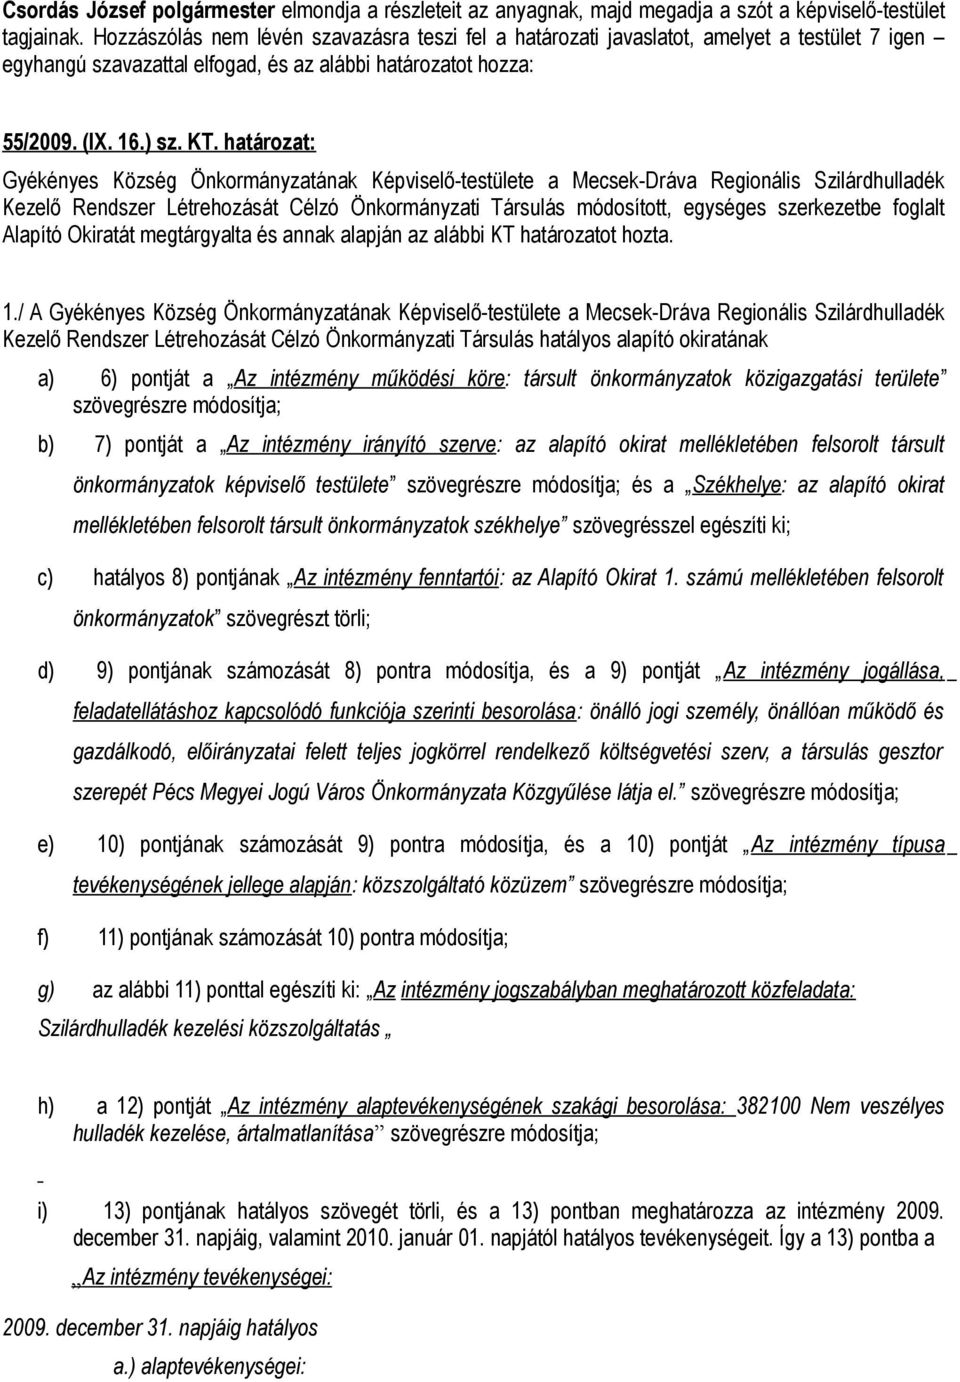 határozat: Gyékényes Község Önkormányzatának Képviselő-testülete a Mecsek-Dráva Regionális Szilárdhulladék Kezelő Rendszer Létrehozását Célzó Önkormányzati Társulás módosított, egységes szerkezetbe